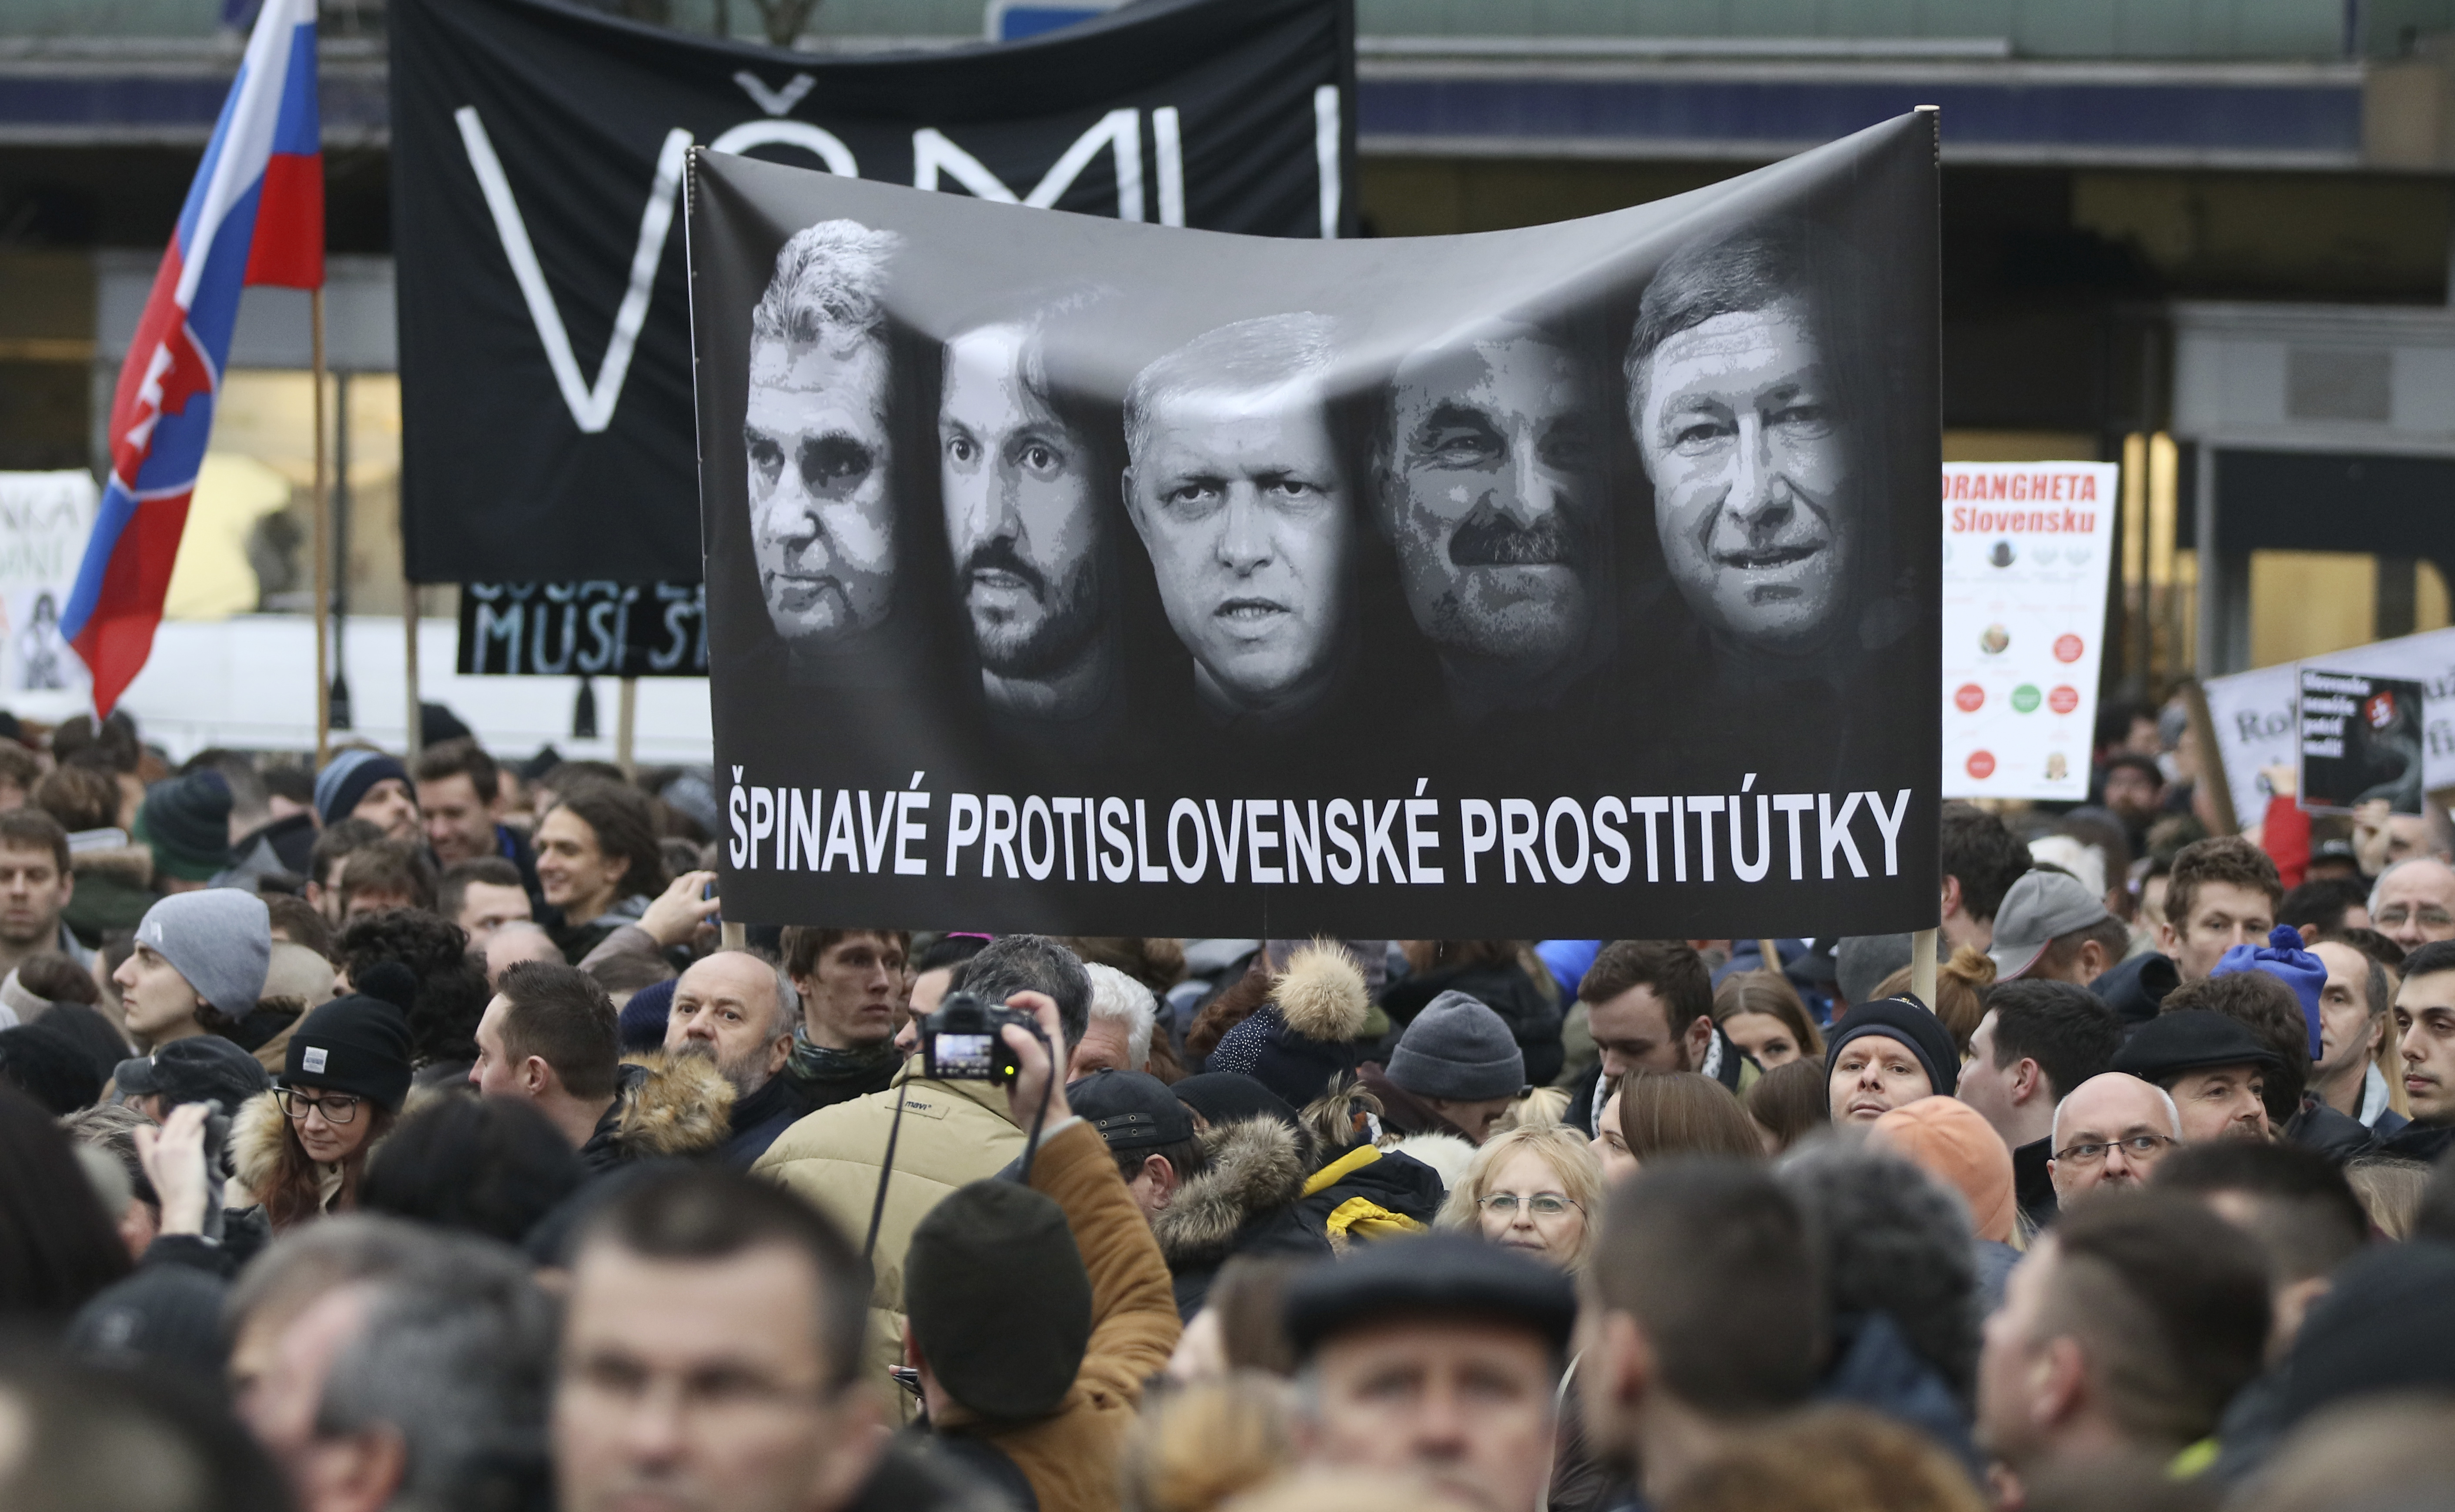 Словакия - от стабилност към хаос след смъртта на журналист